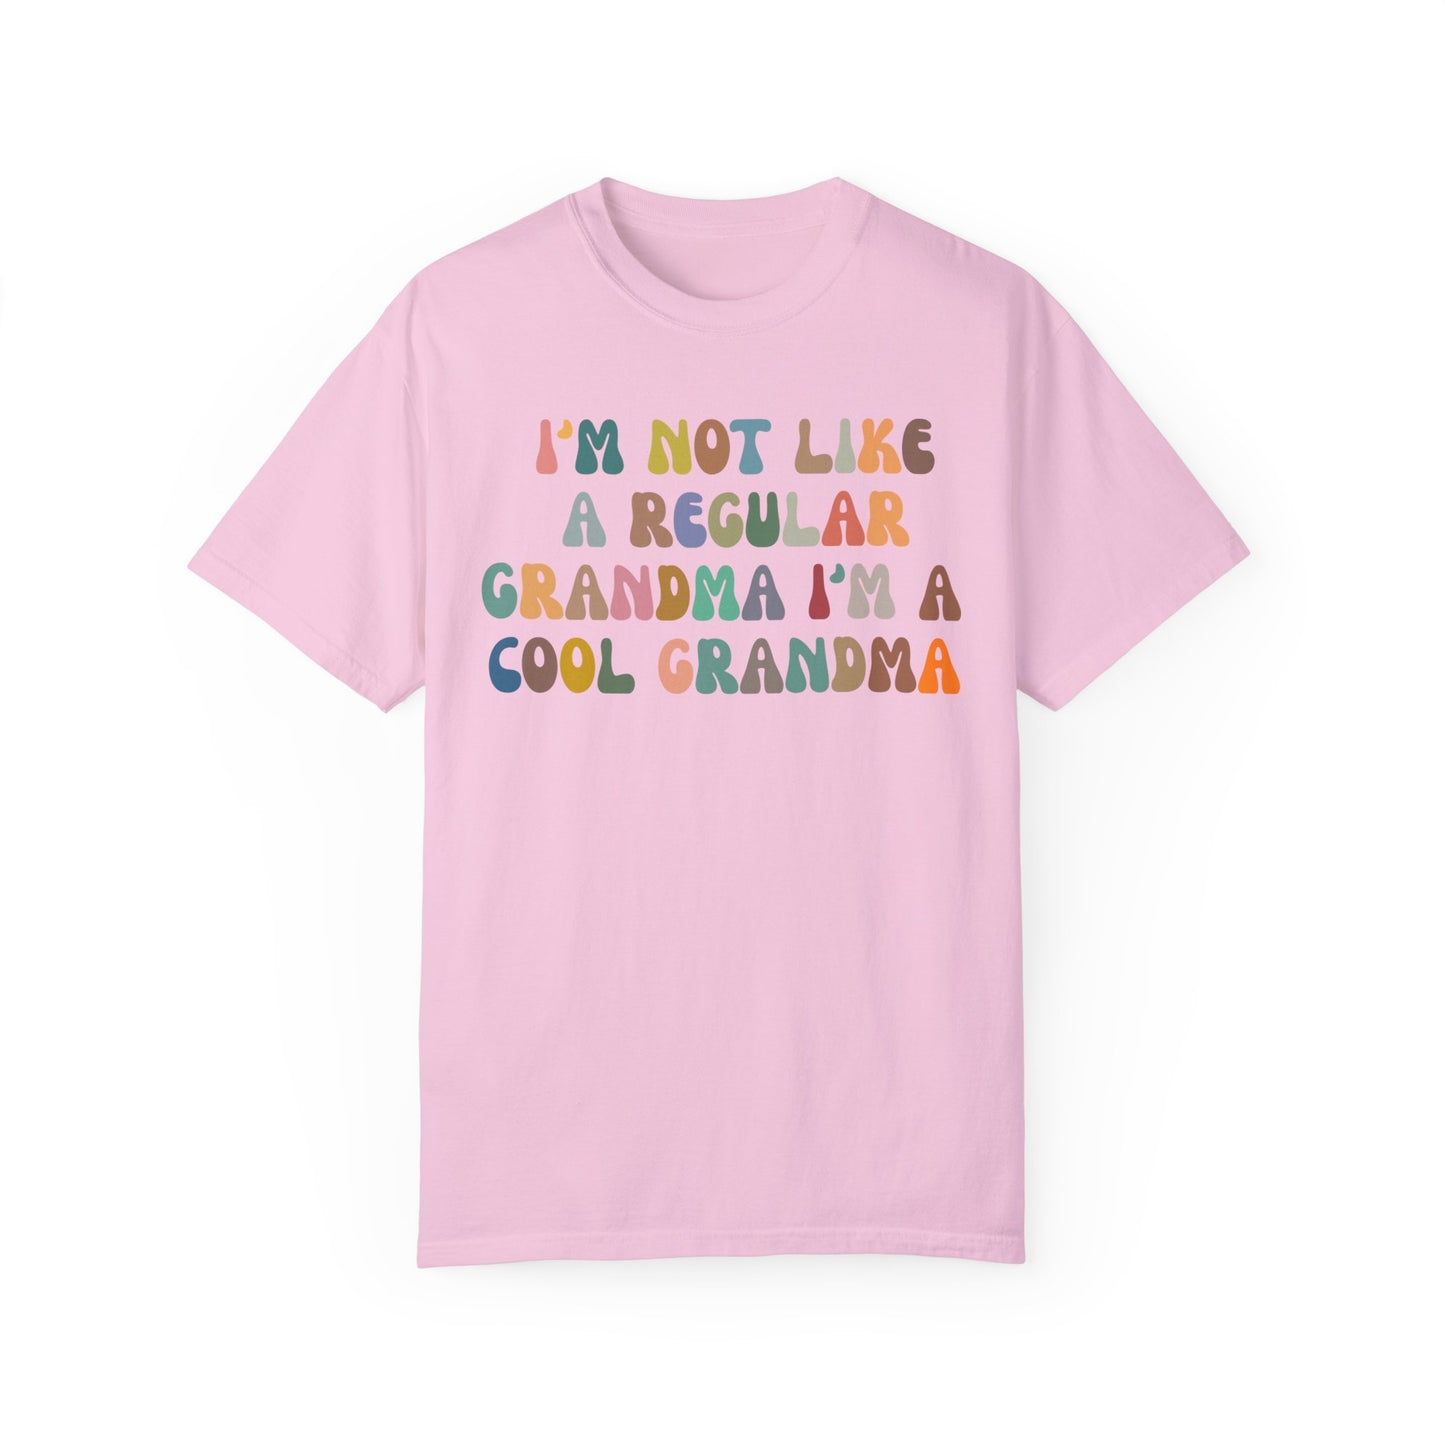 I'm Not Like A Regular Grandma I'm A Cool Grandma Shirt, Funny Grandma Shirt, Cool Grandma Shirt, Best Grandma Shirt Gift for Grandma, CC975